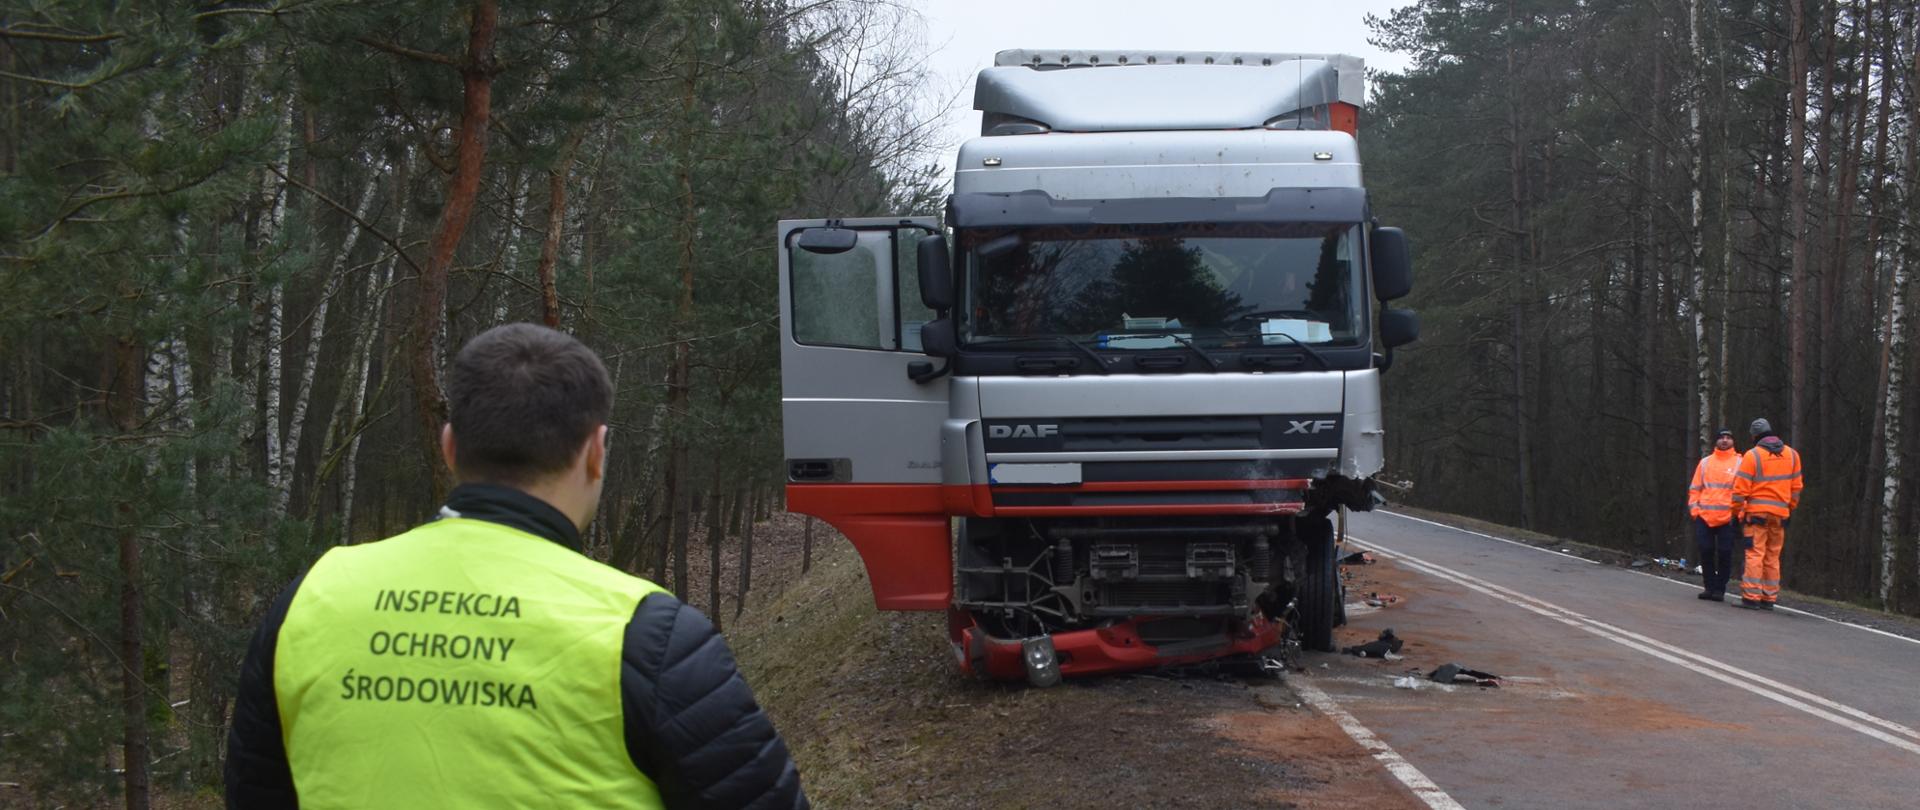 Inspektor Wojewódzkiego Inspektoratu Ochrony Środowiska w Warszawie prowadzi oględziny wypadku samochodu ciężarowego na drodze prowadzącej przez las.